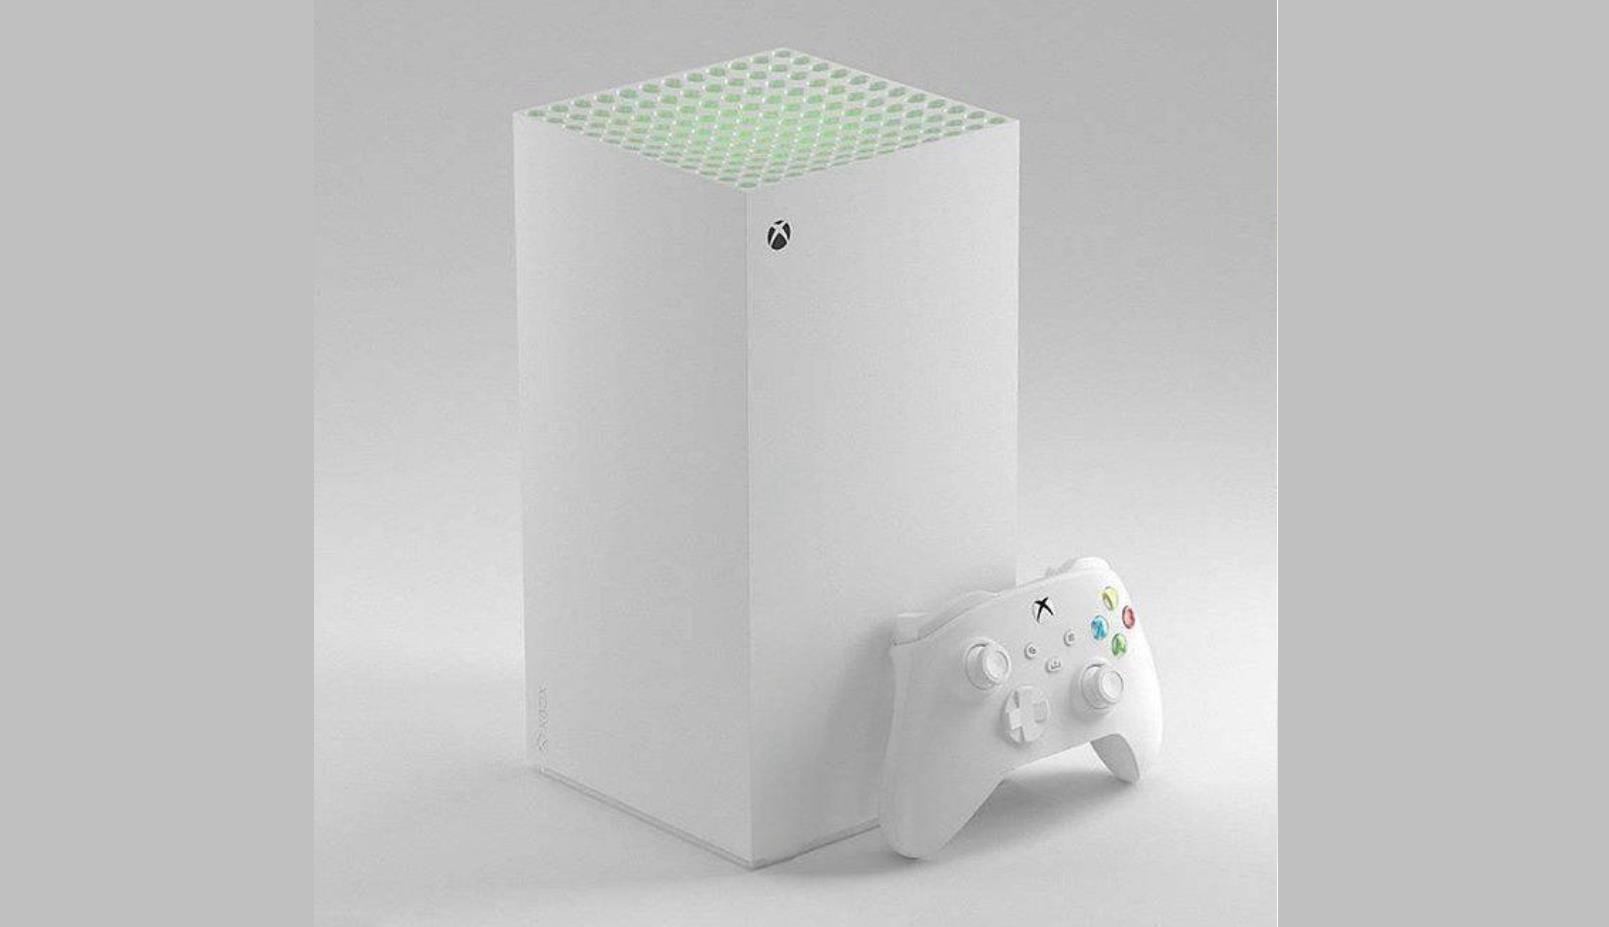 微软Xbox Series X白色版曝光 预计6月发布